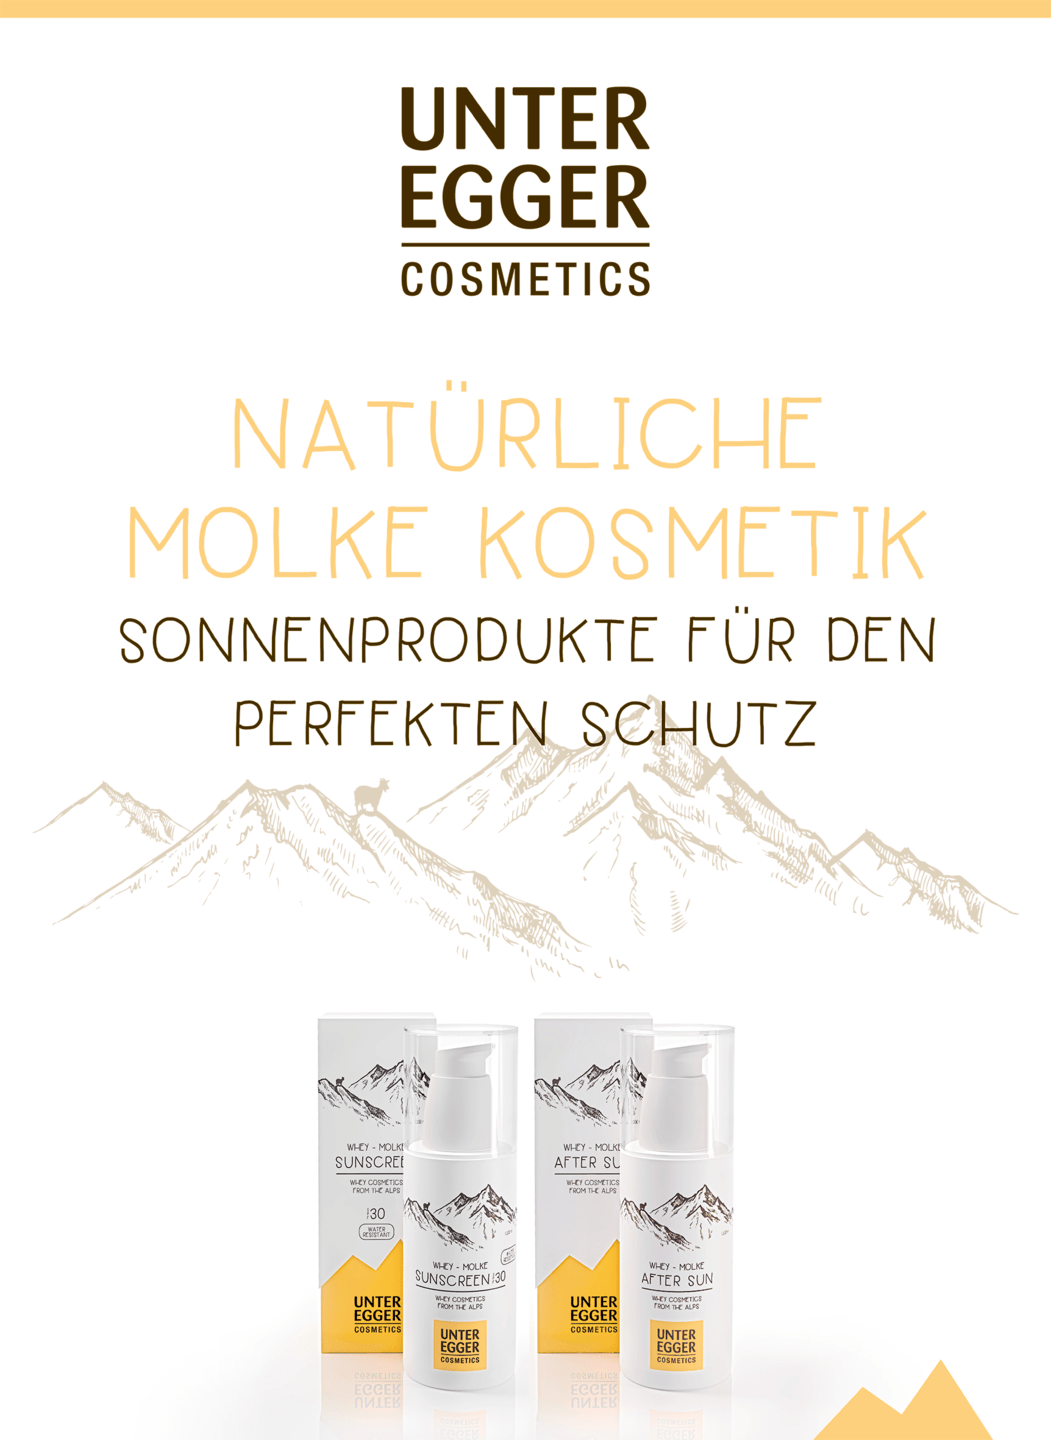 Unteregger Cosmetics - Poster "Sonnenprodukte"